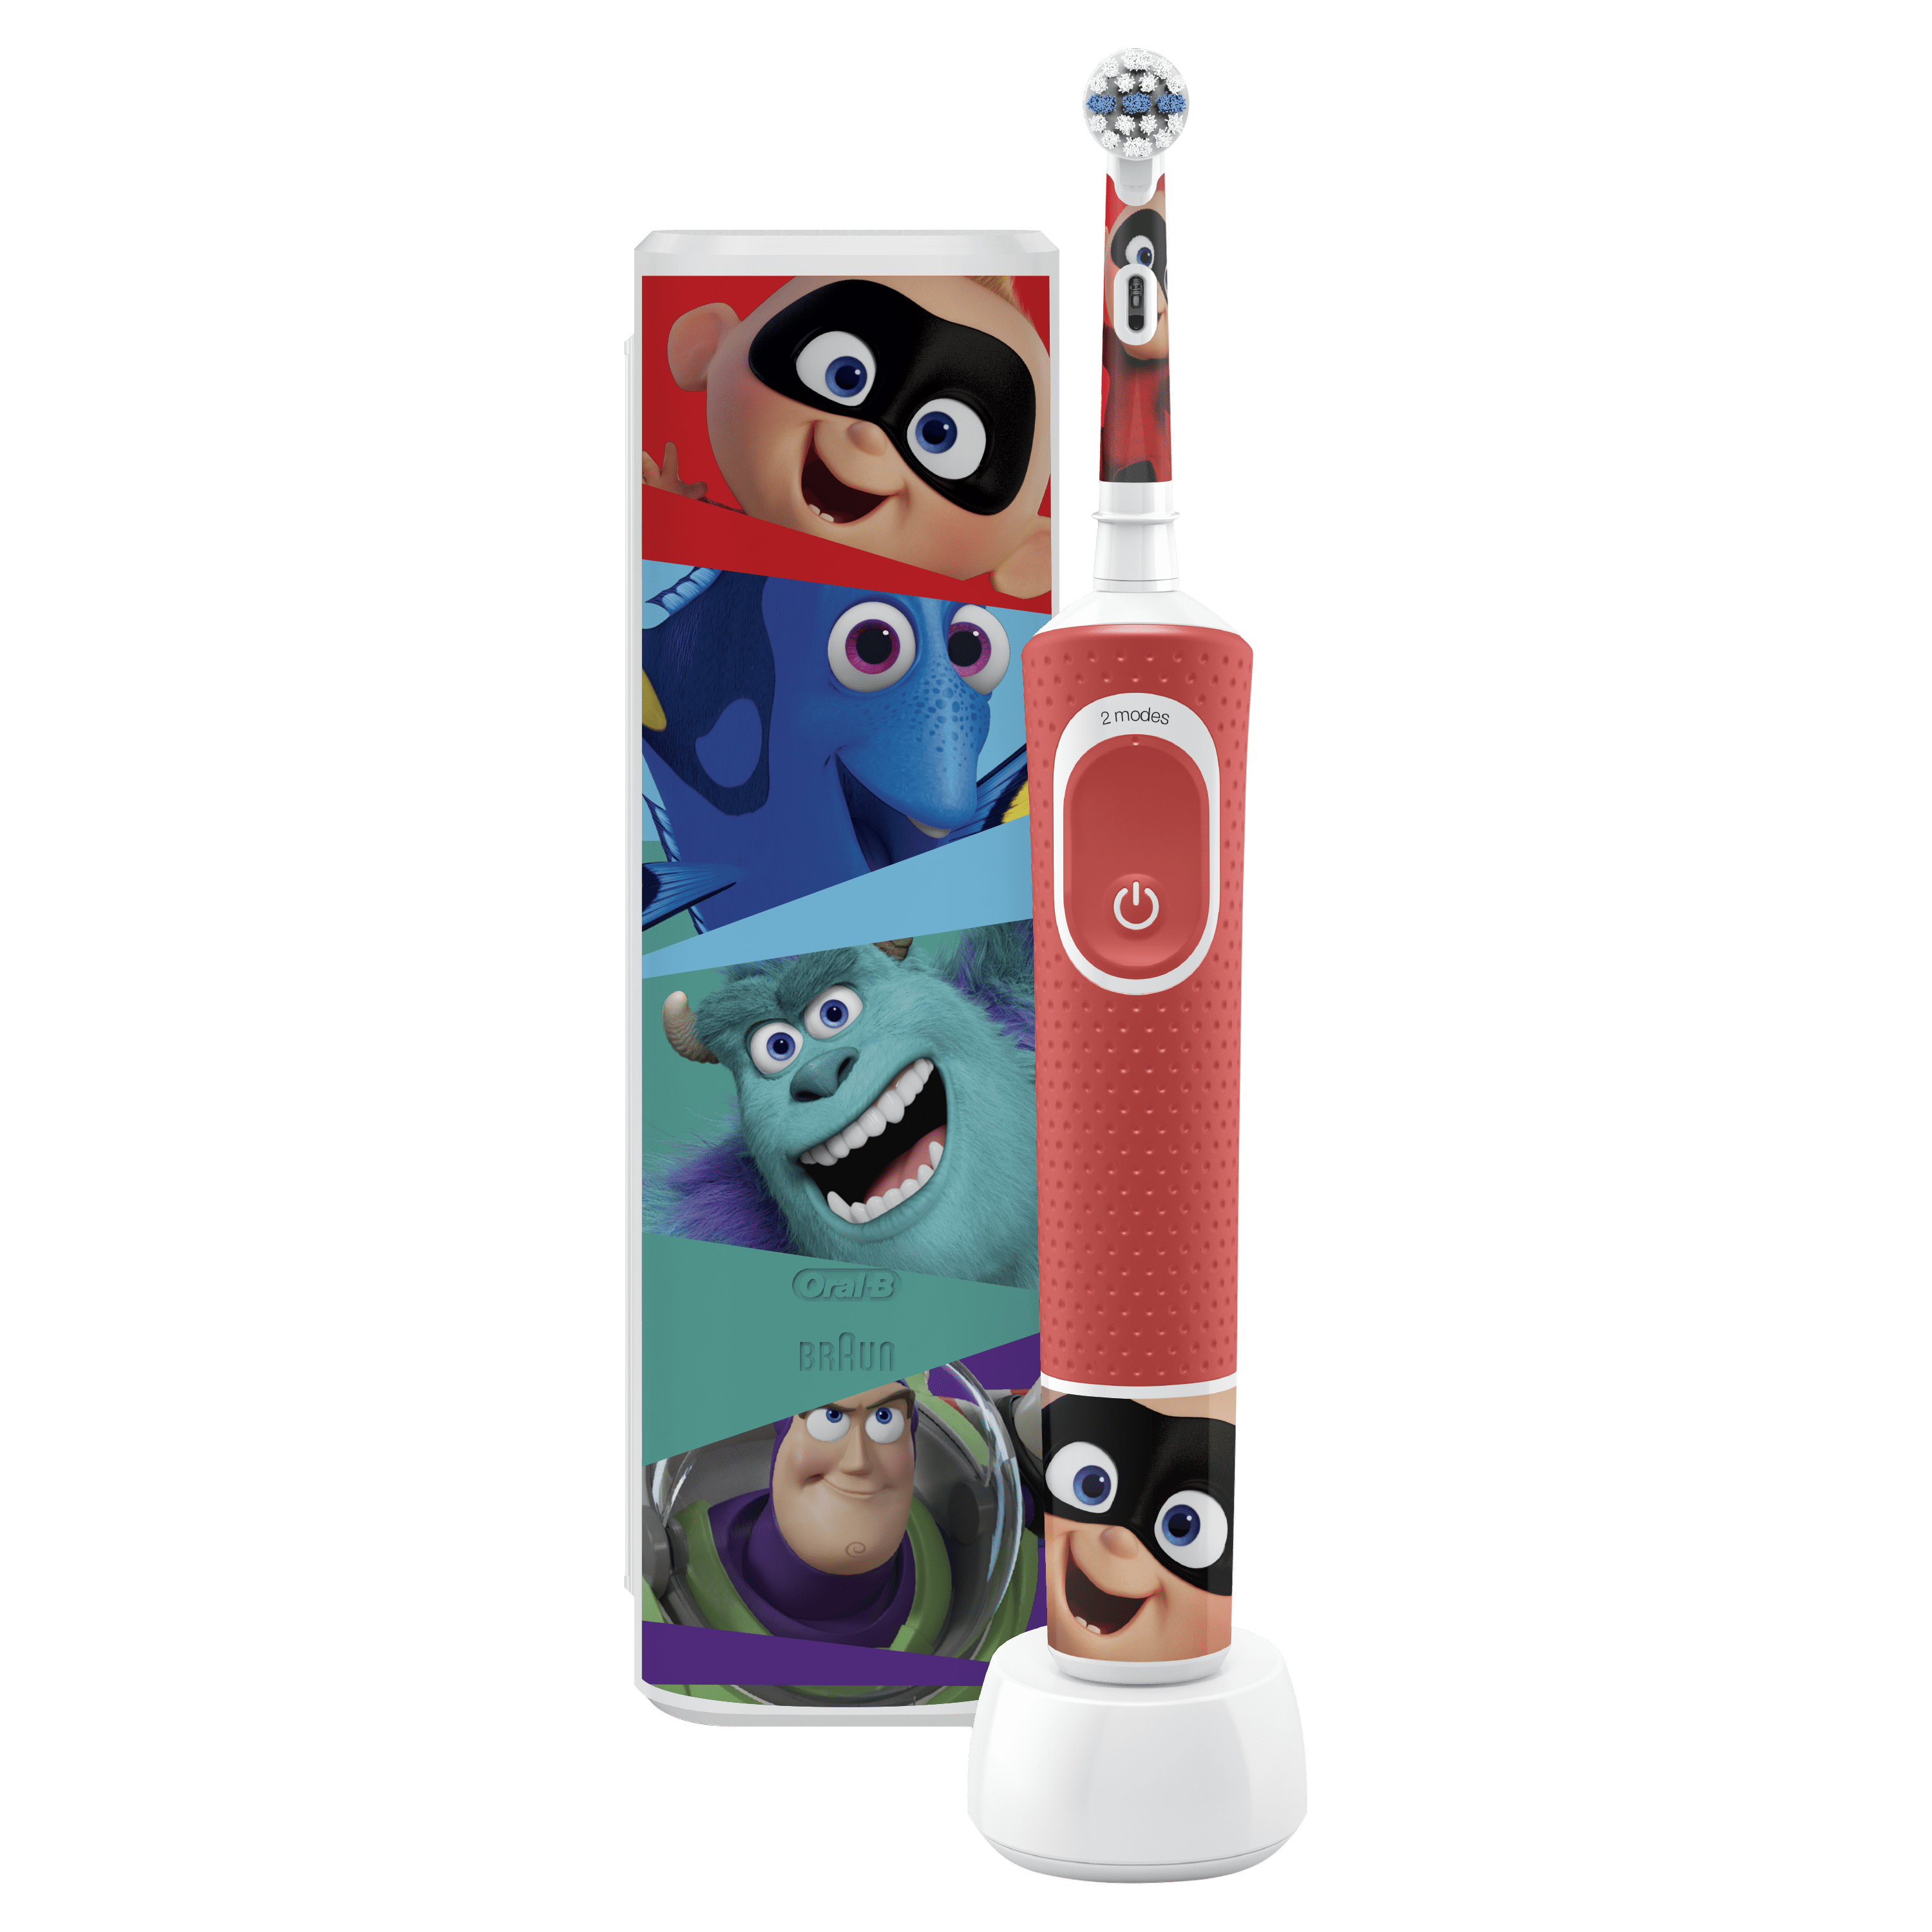 Детская электрическая зубная щетка + футляр Oral-B Kids Лучшие мультфильмы Pixar 3+